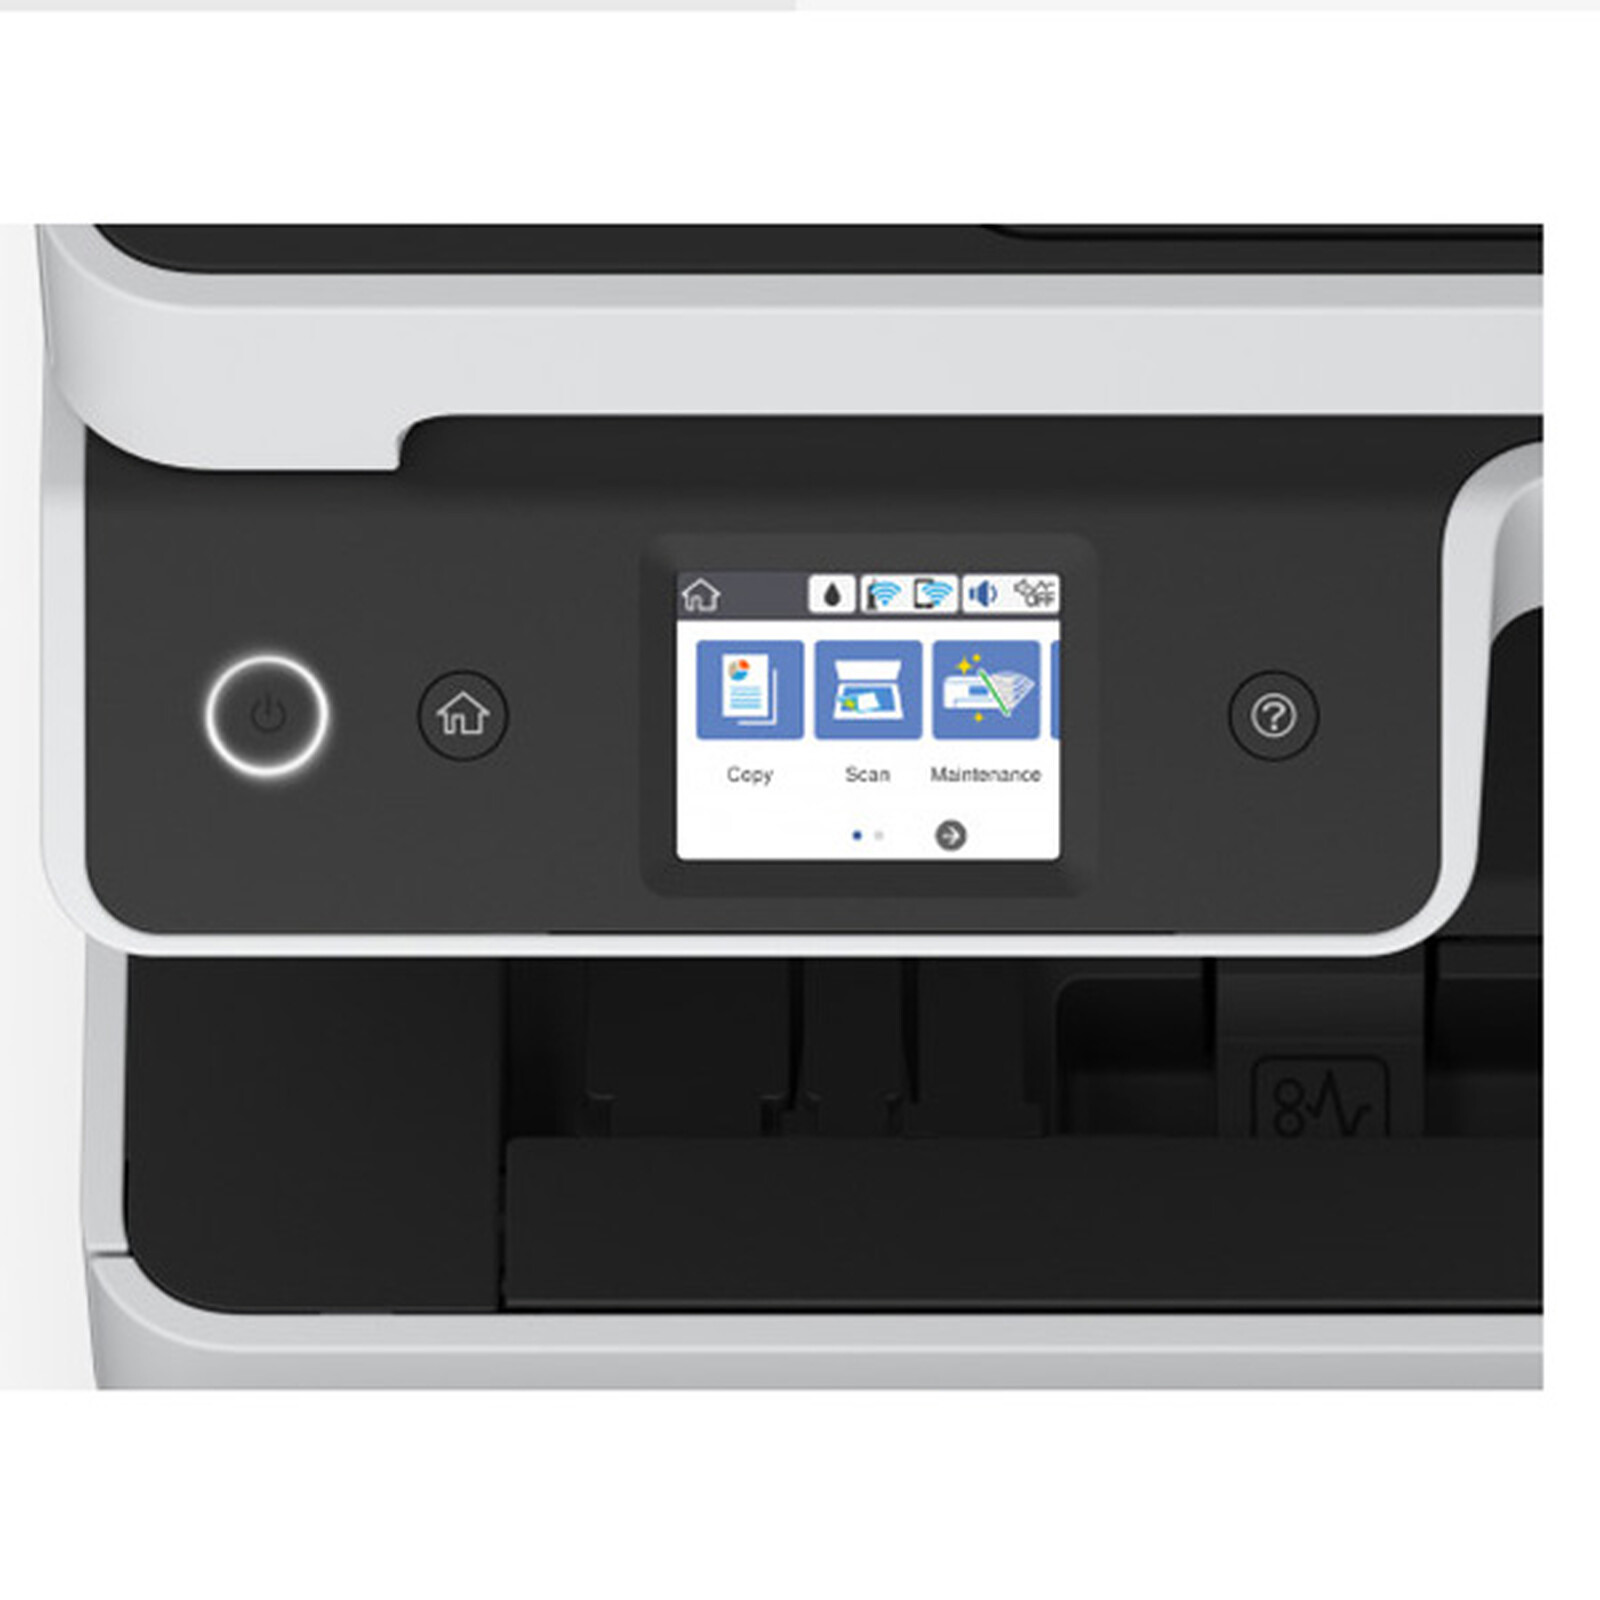 Test Epson EcoTank ET-3700 : une imprimante sans cartouches vite